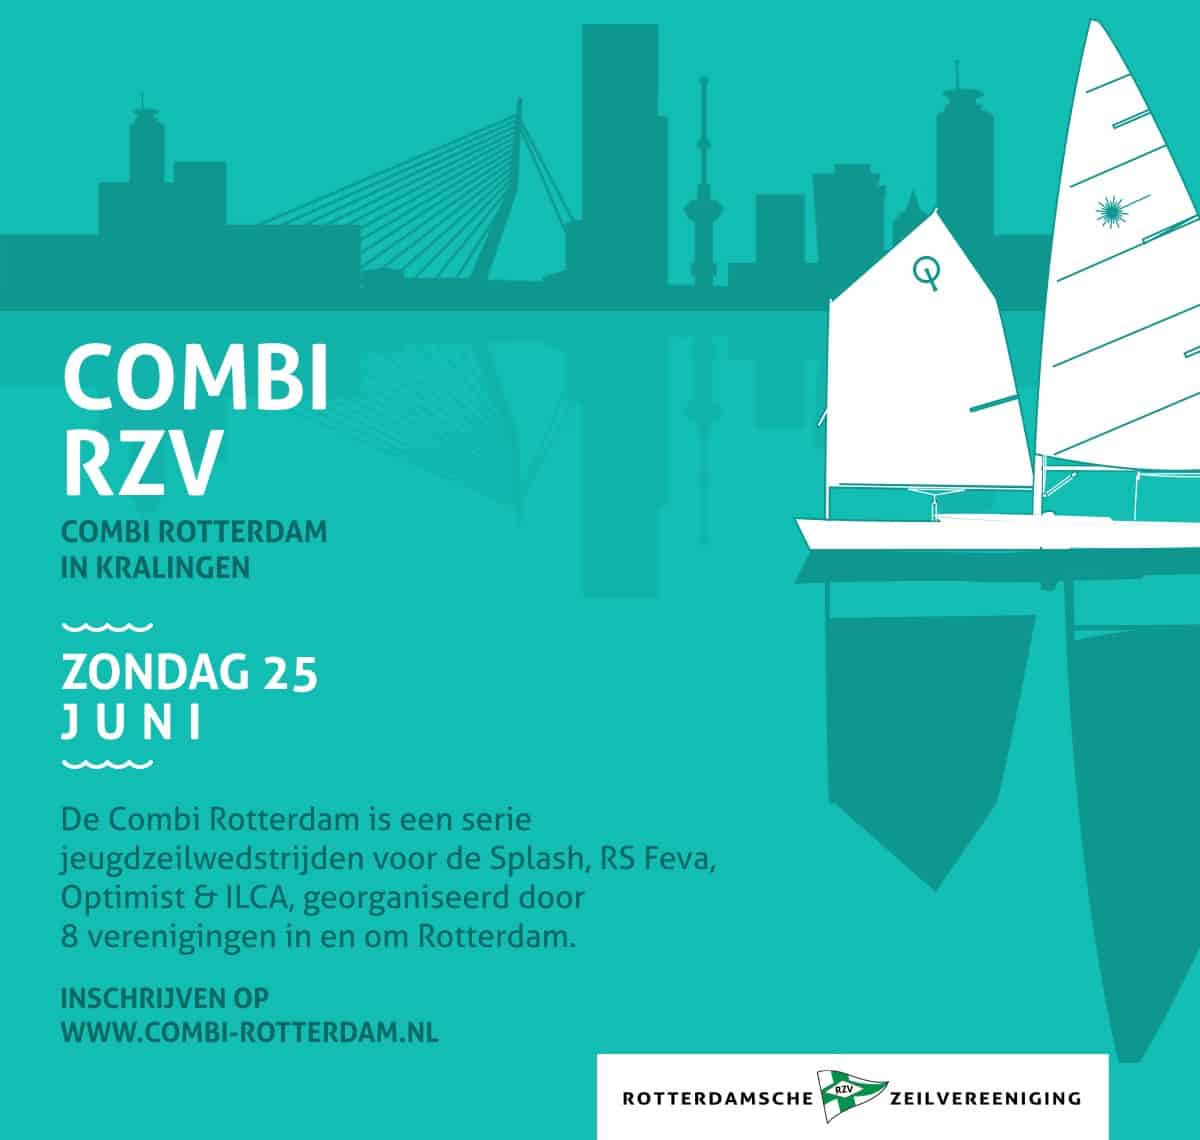 Combi Rotterdam RZV 25 juni